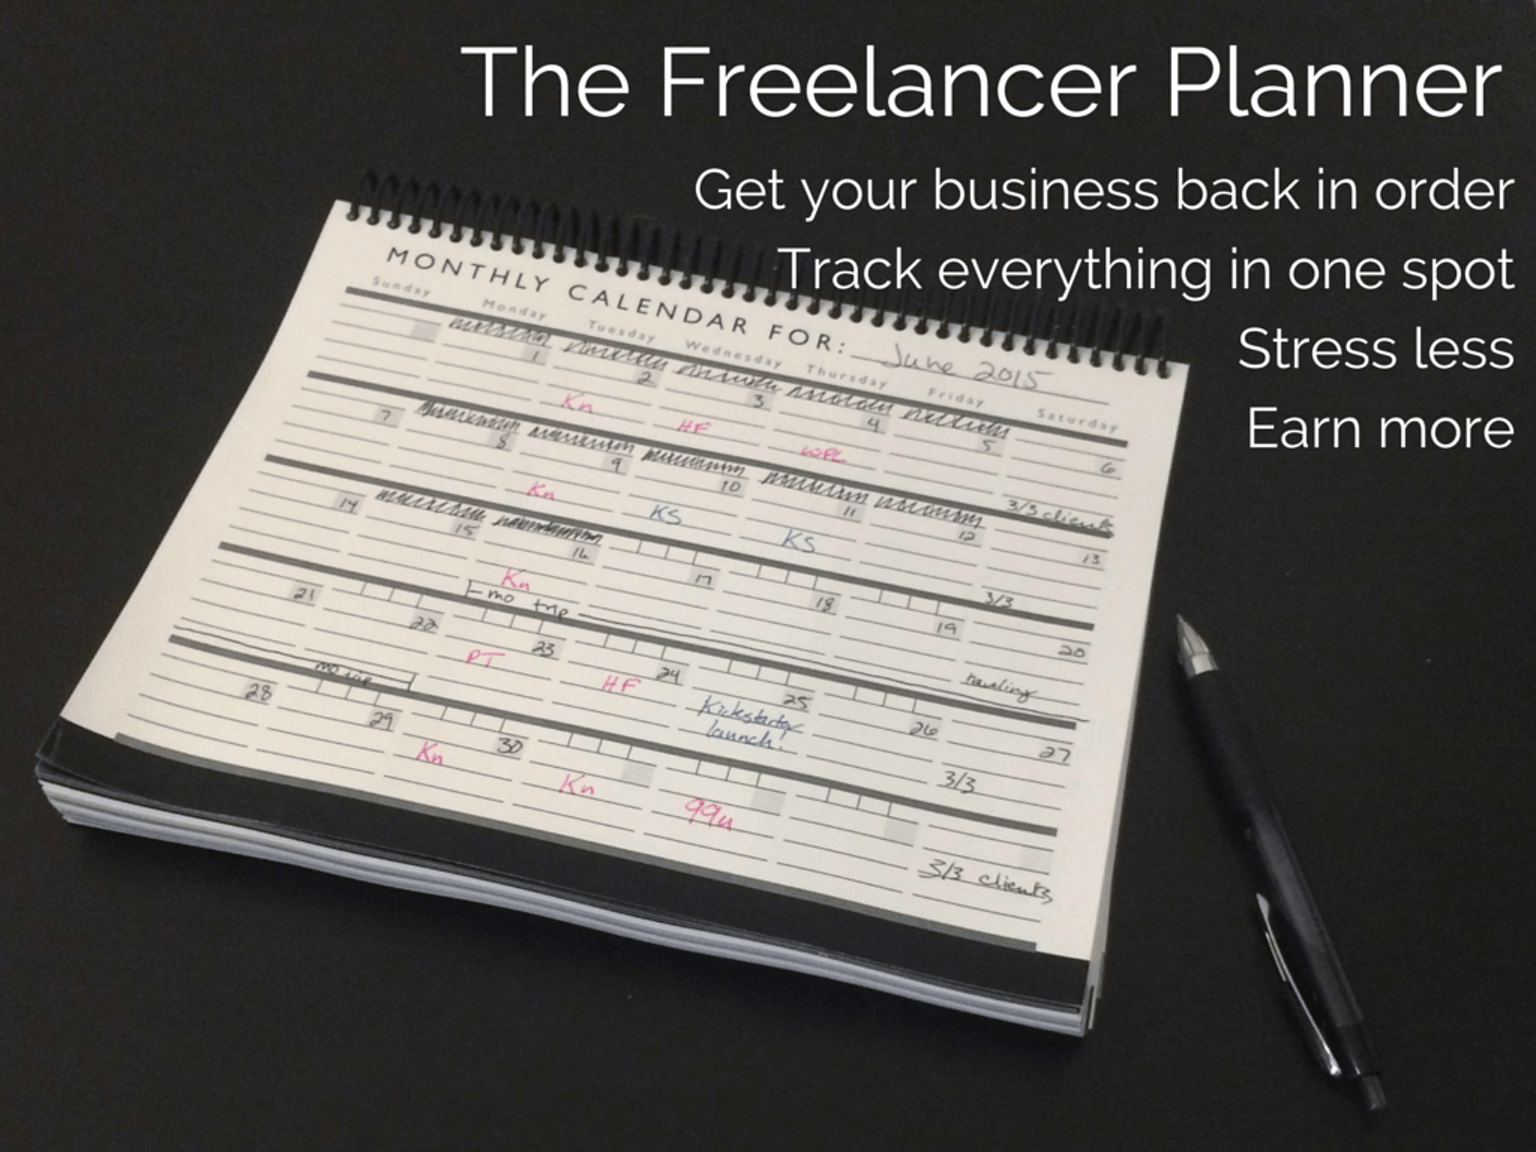 The Freelancer Planner